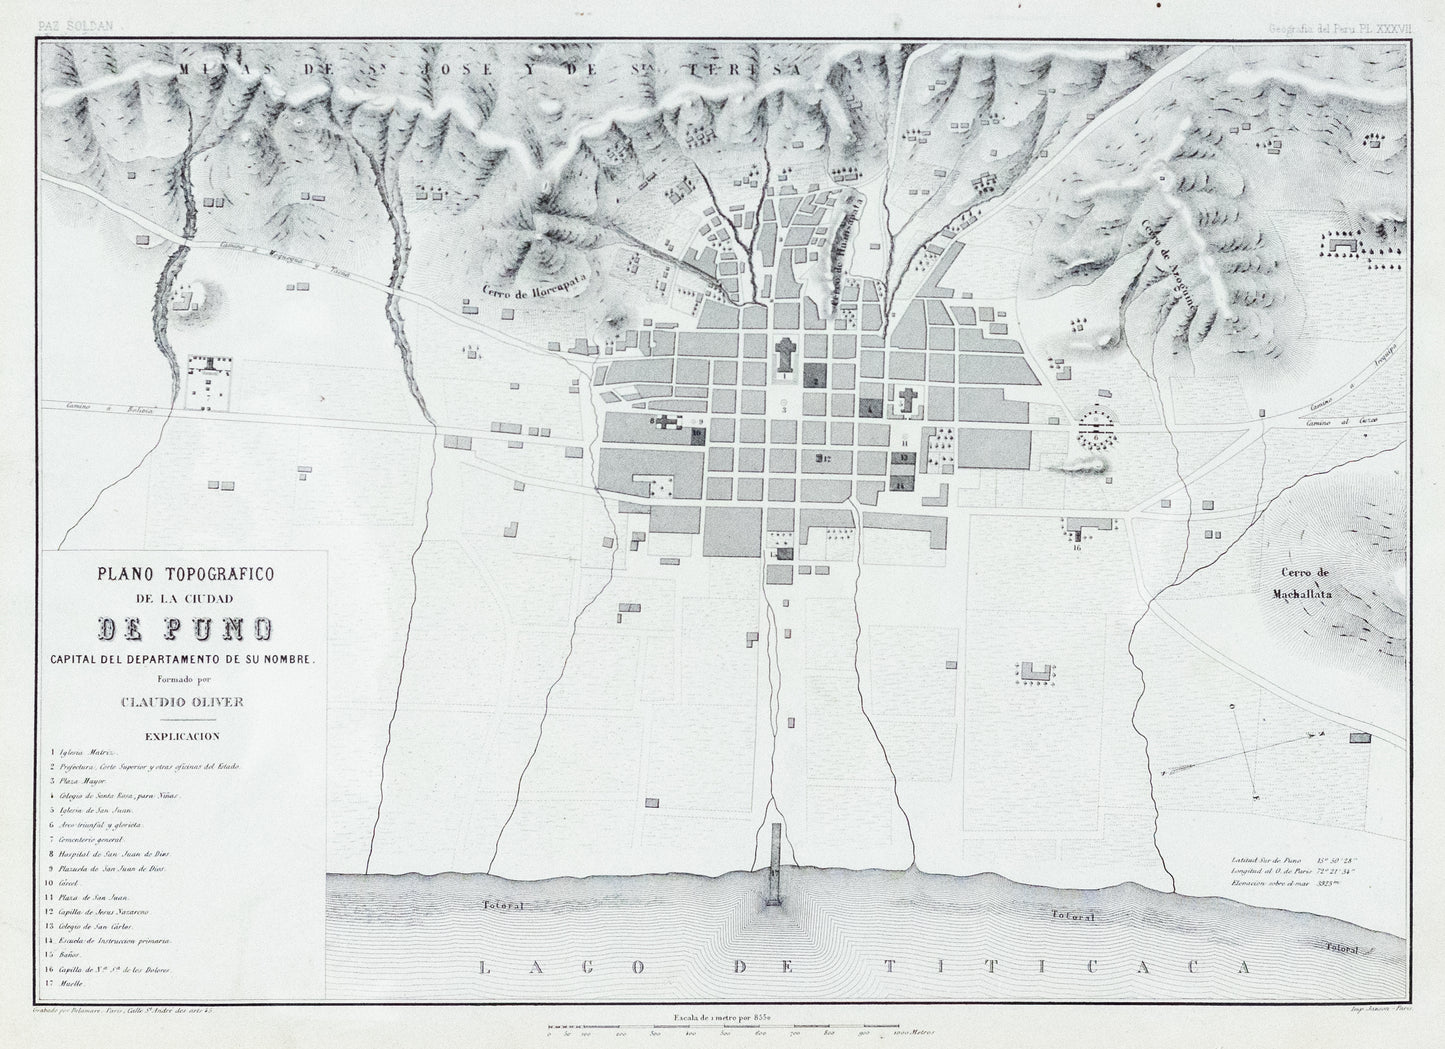 Soldan, Paz. Plano Topografico de la Cuidad de Puno. Paris, ca. 1865.